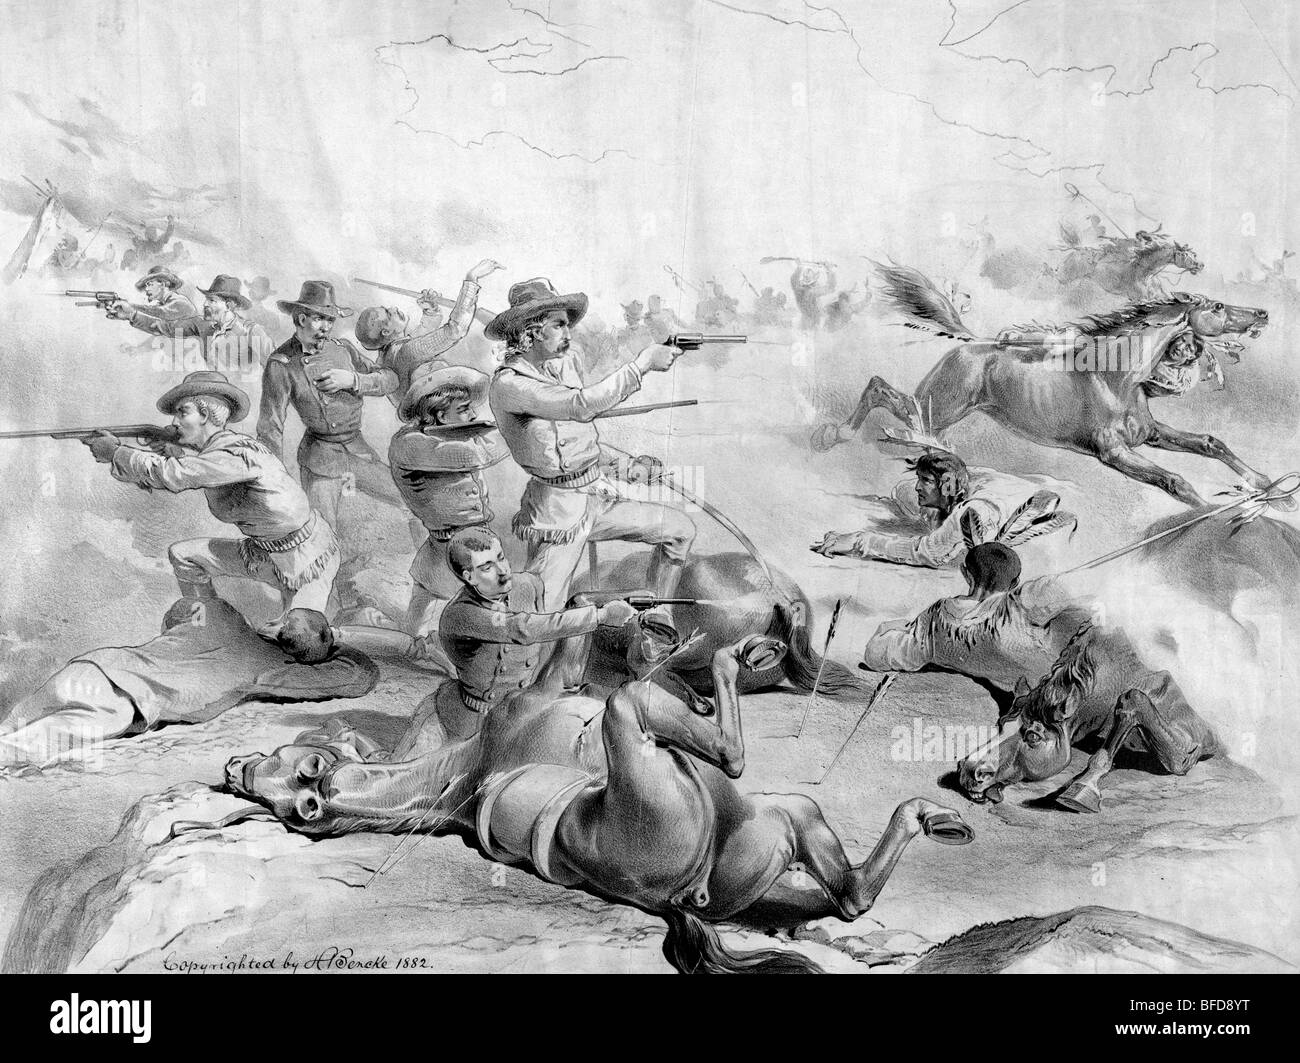 Drucken mit Custer's Last Stand, mit den USA 7. Kavallerie in der Schlacht von Little Bighorn 1876. Stockfoto